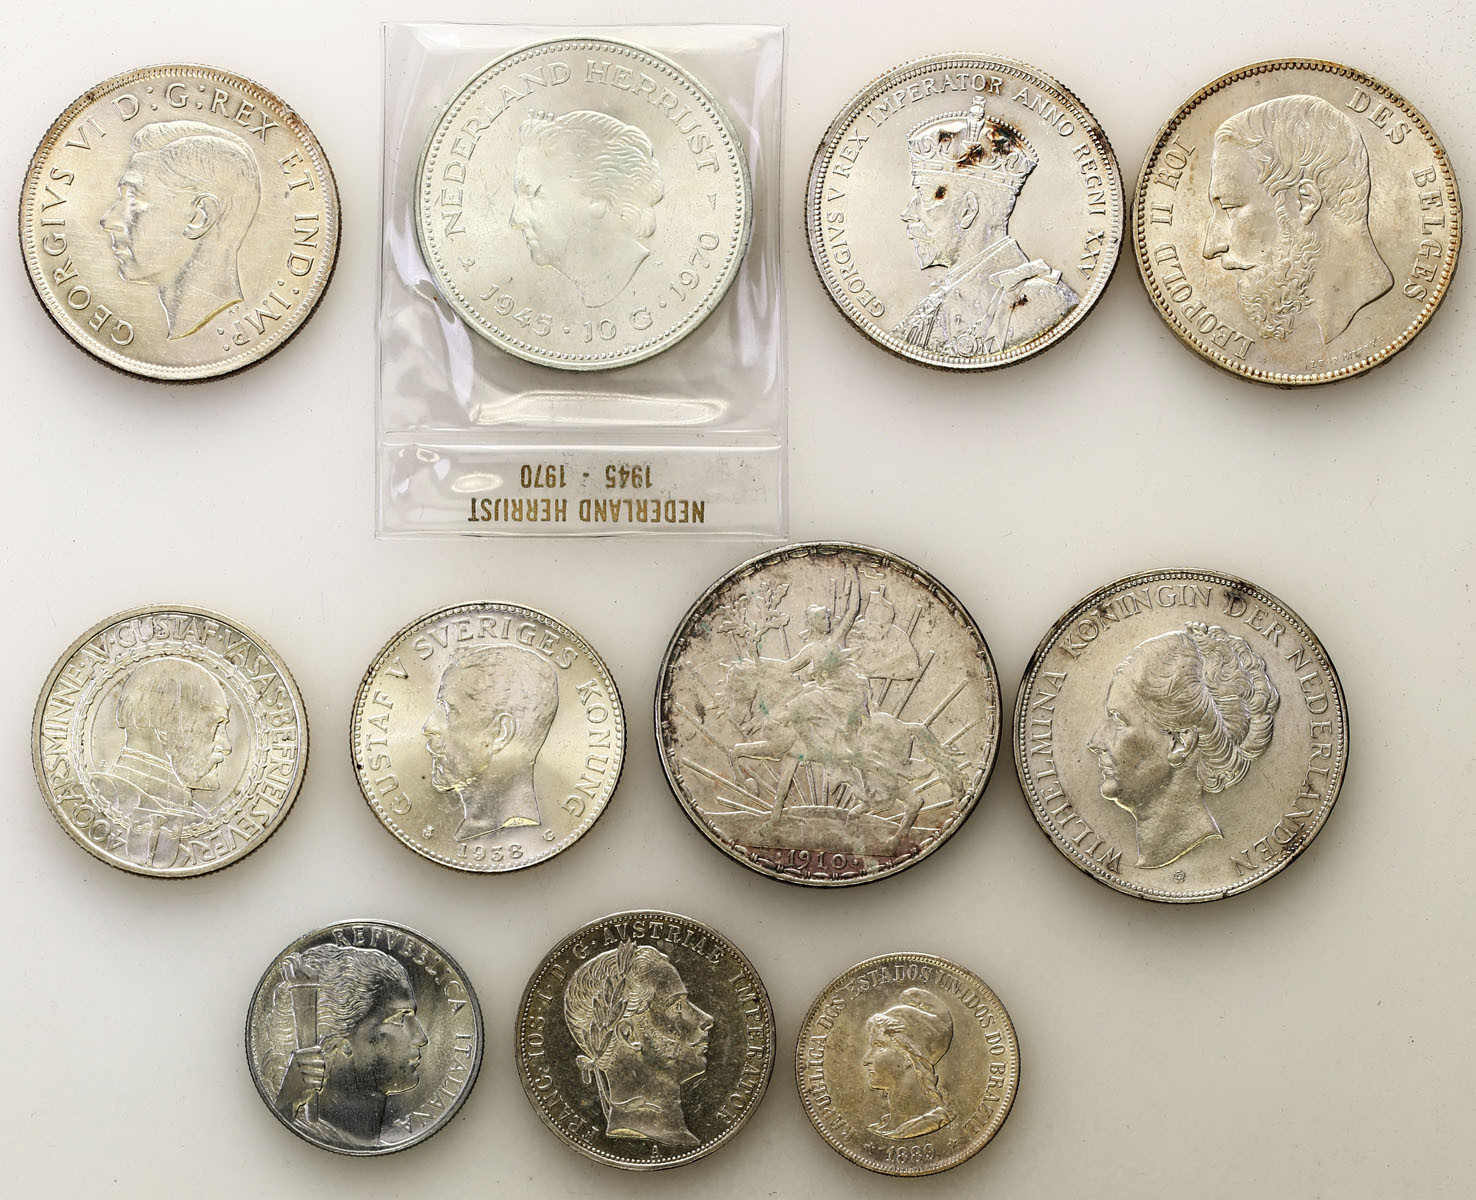 Świat – Austria, Belgia, Kanada, Szwecja, Holandia, Brazylia, Meksyk, Włochy,  zestaw 11 monet, srebro